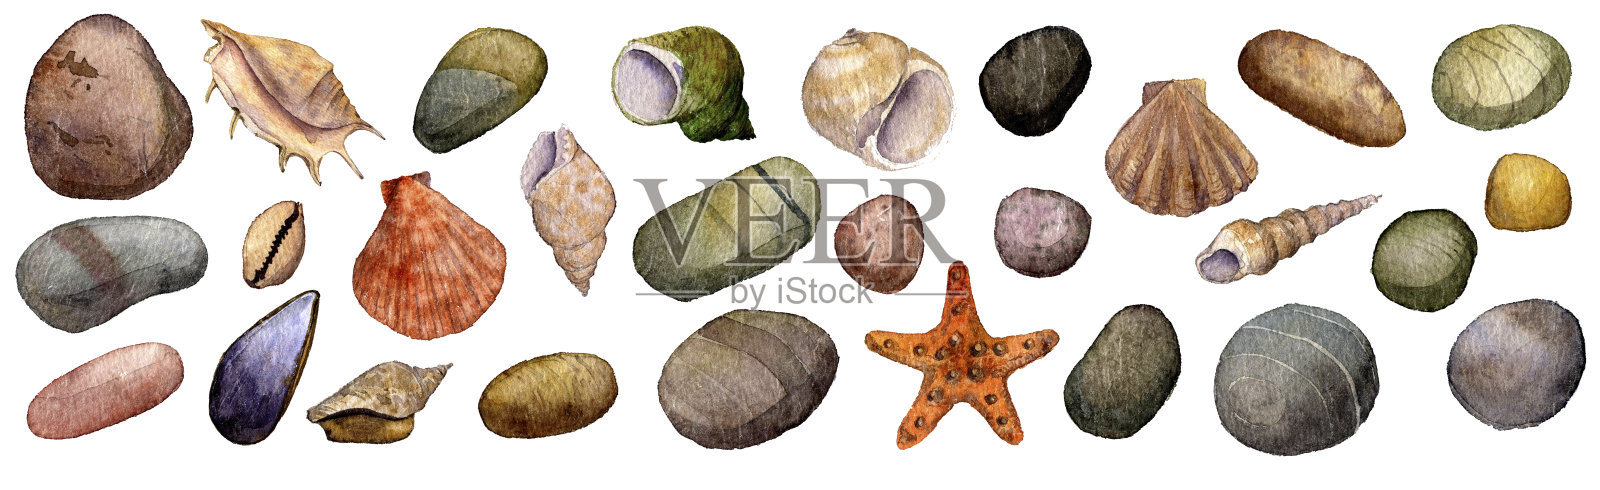 水彩画贝壳和石头插画图片素材